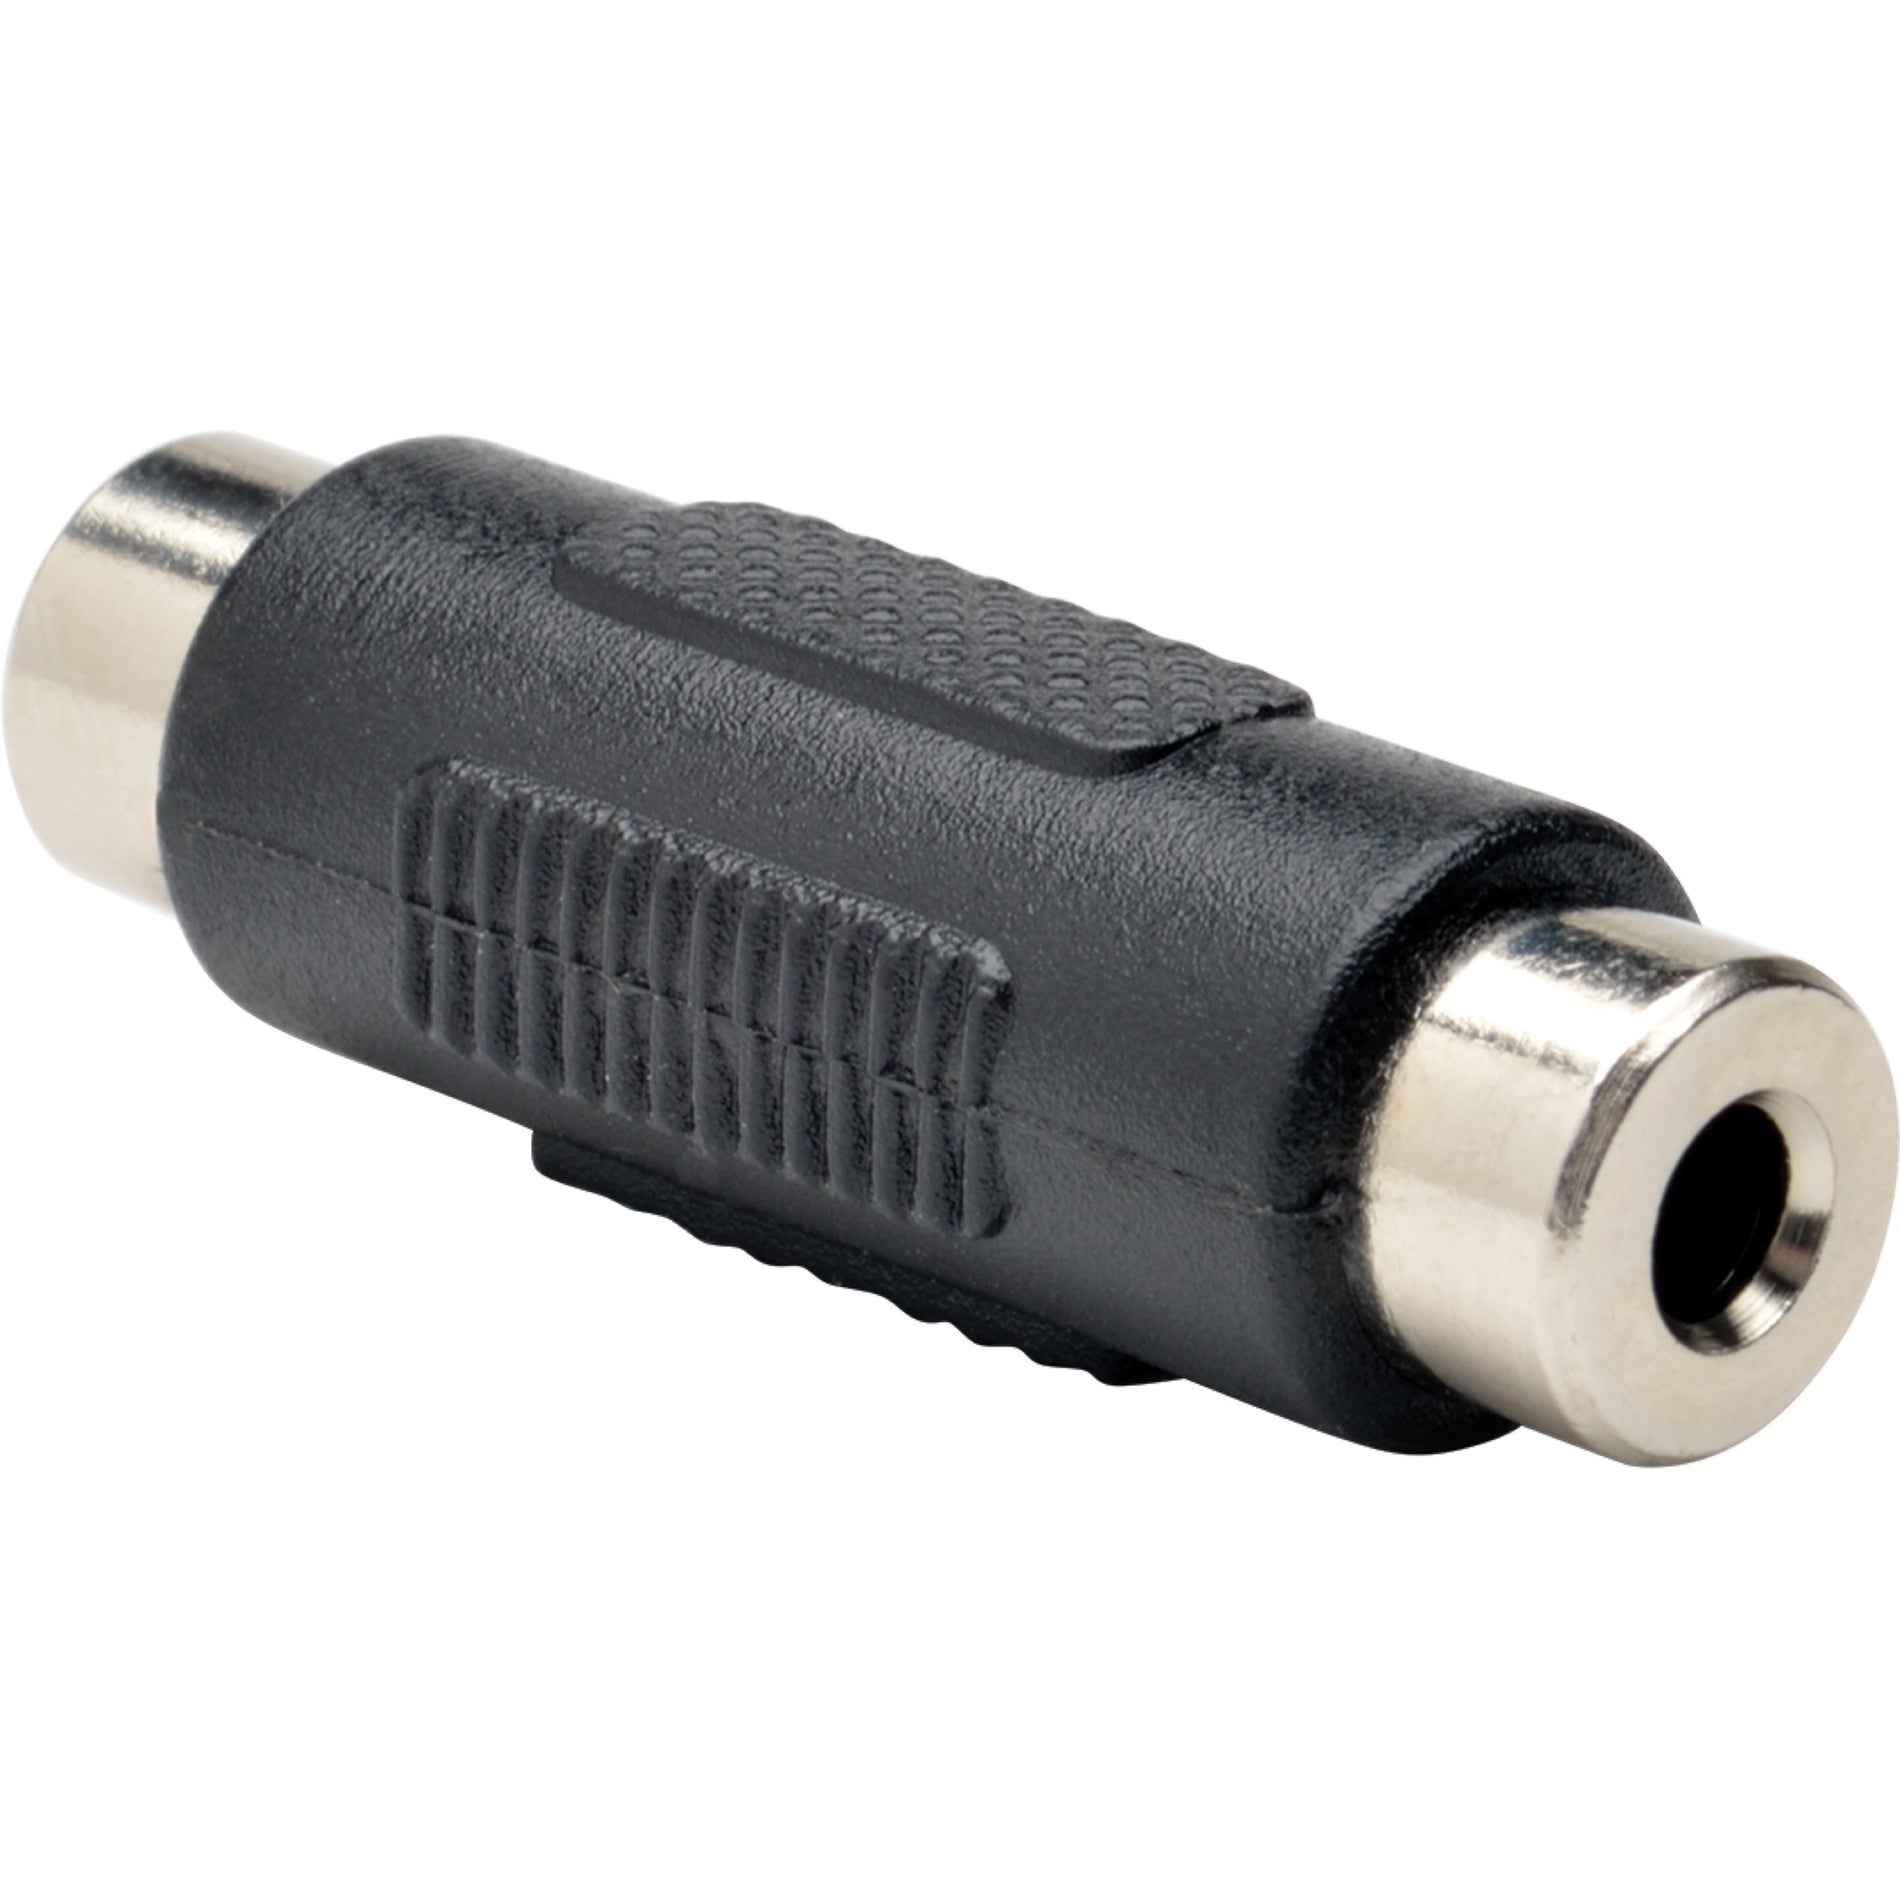 特征Tripp Lite P310-000 3.5毫米迷你立体声音频耦合器（F / F），成型，镀金连接器，黑色 品牌名称：Tripp Lite